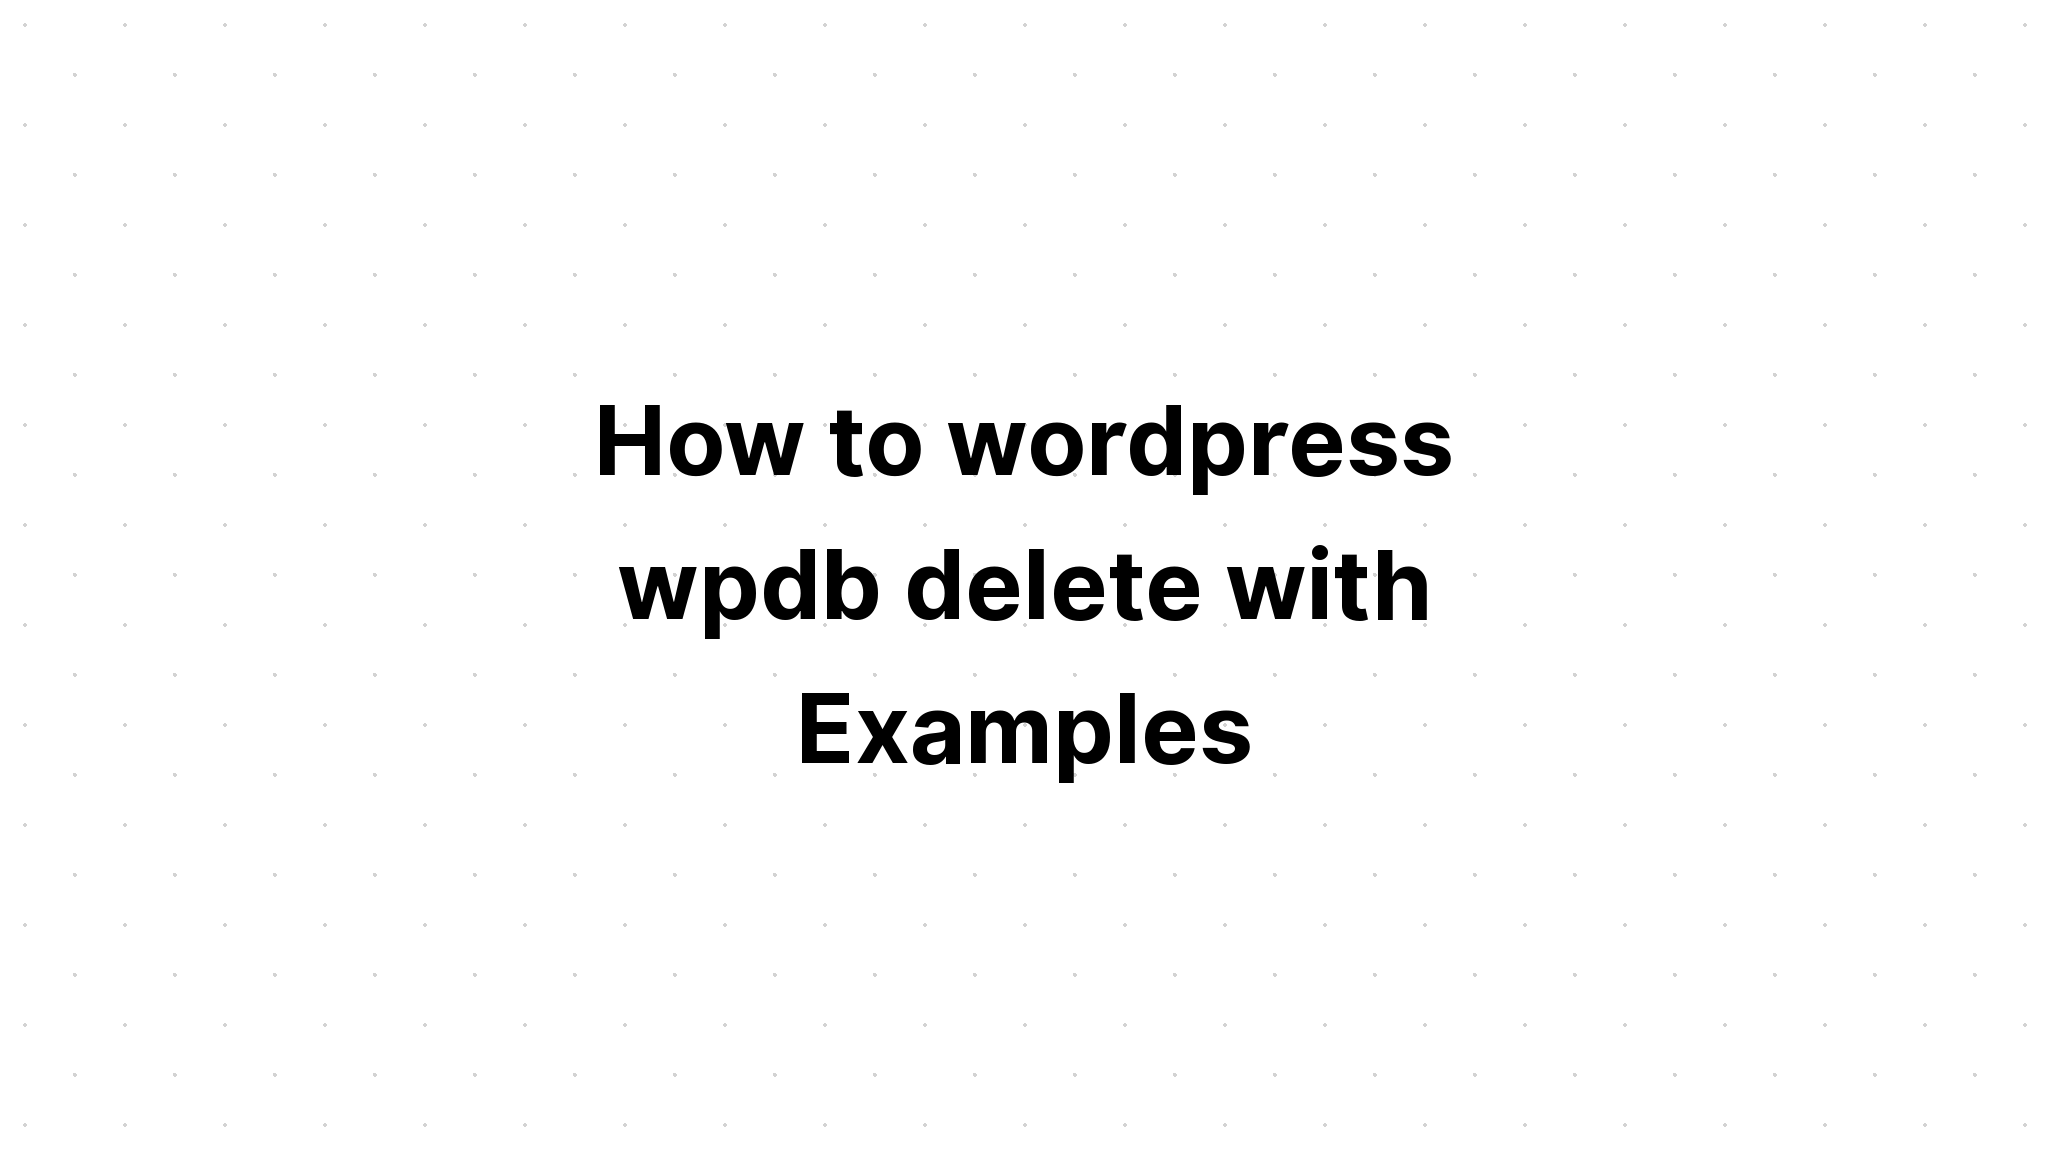 Cách xóa wordpress wpdb với các ví dụ